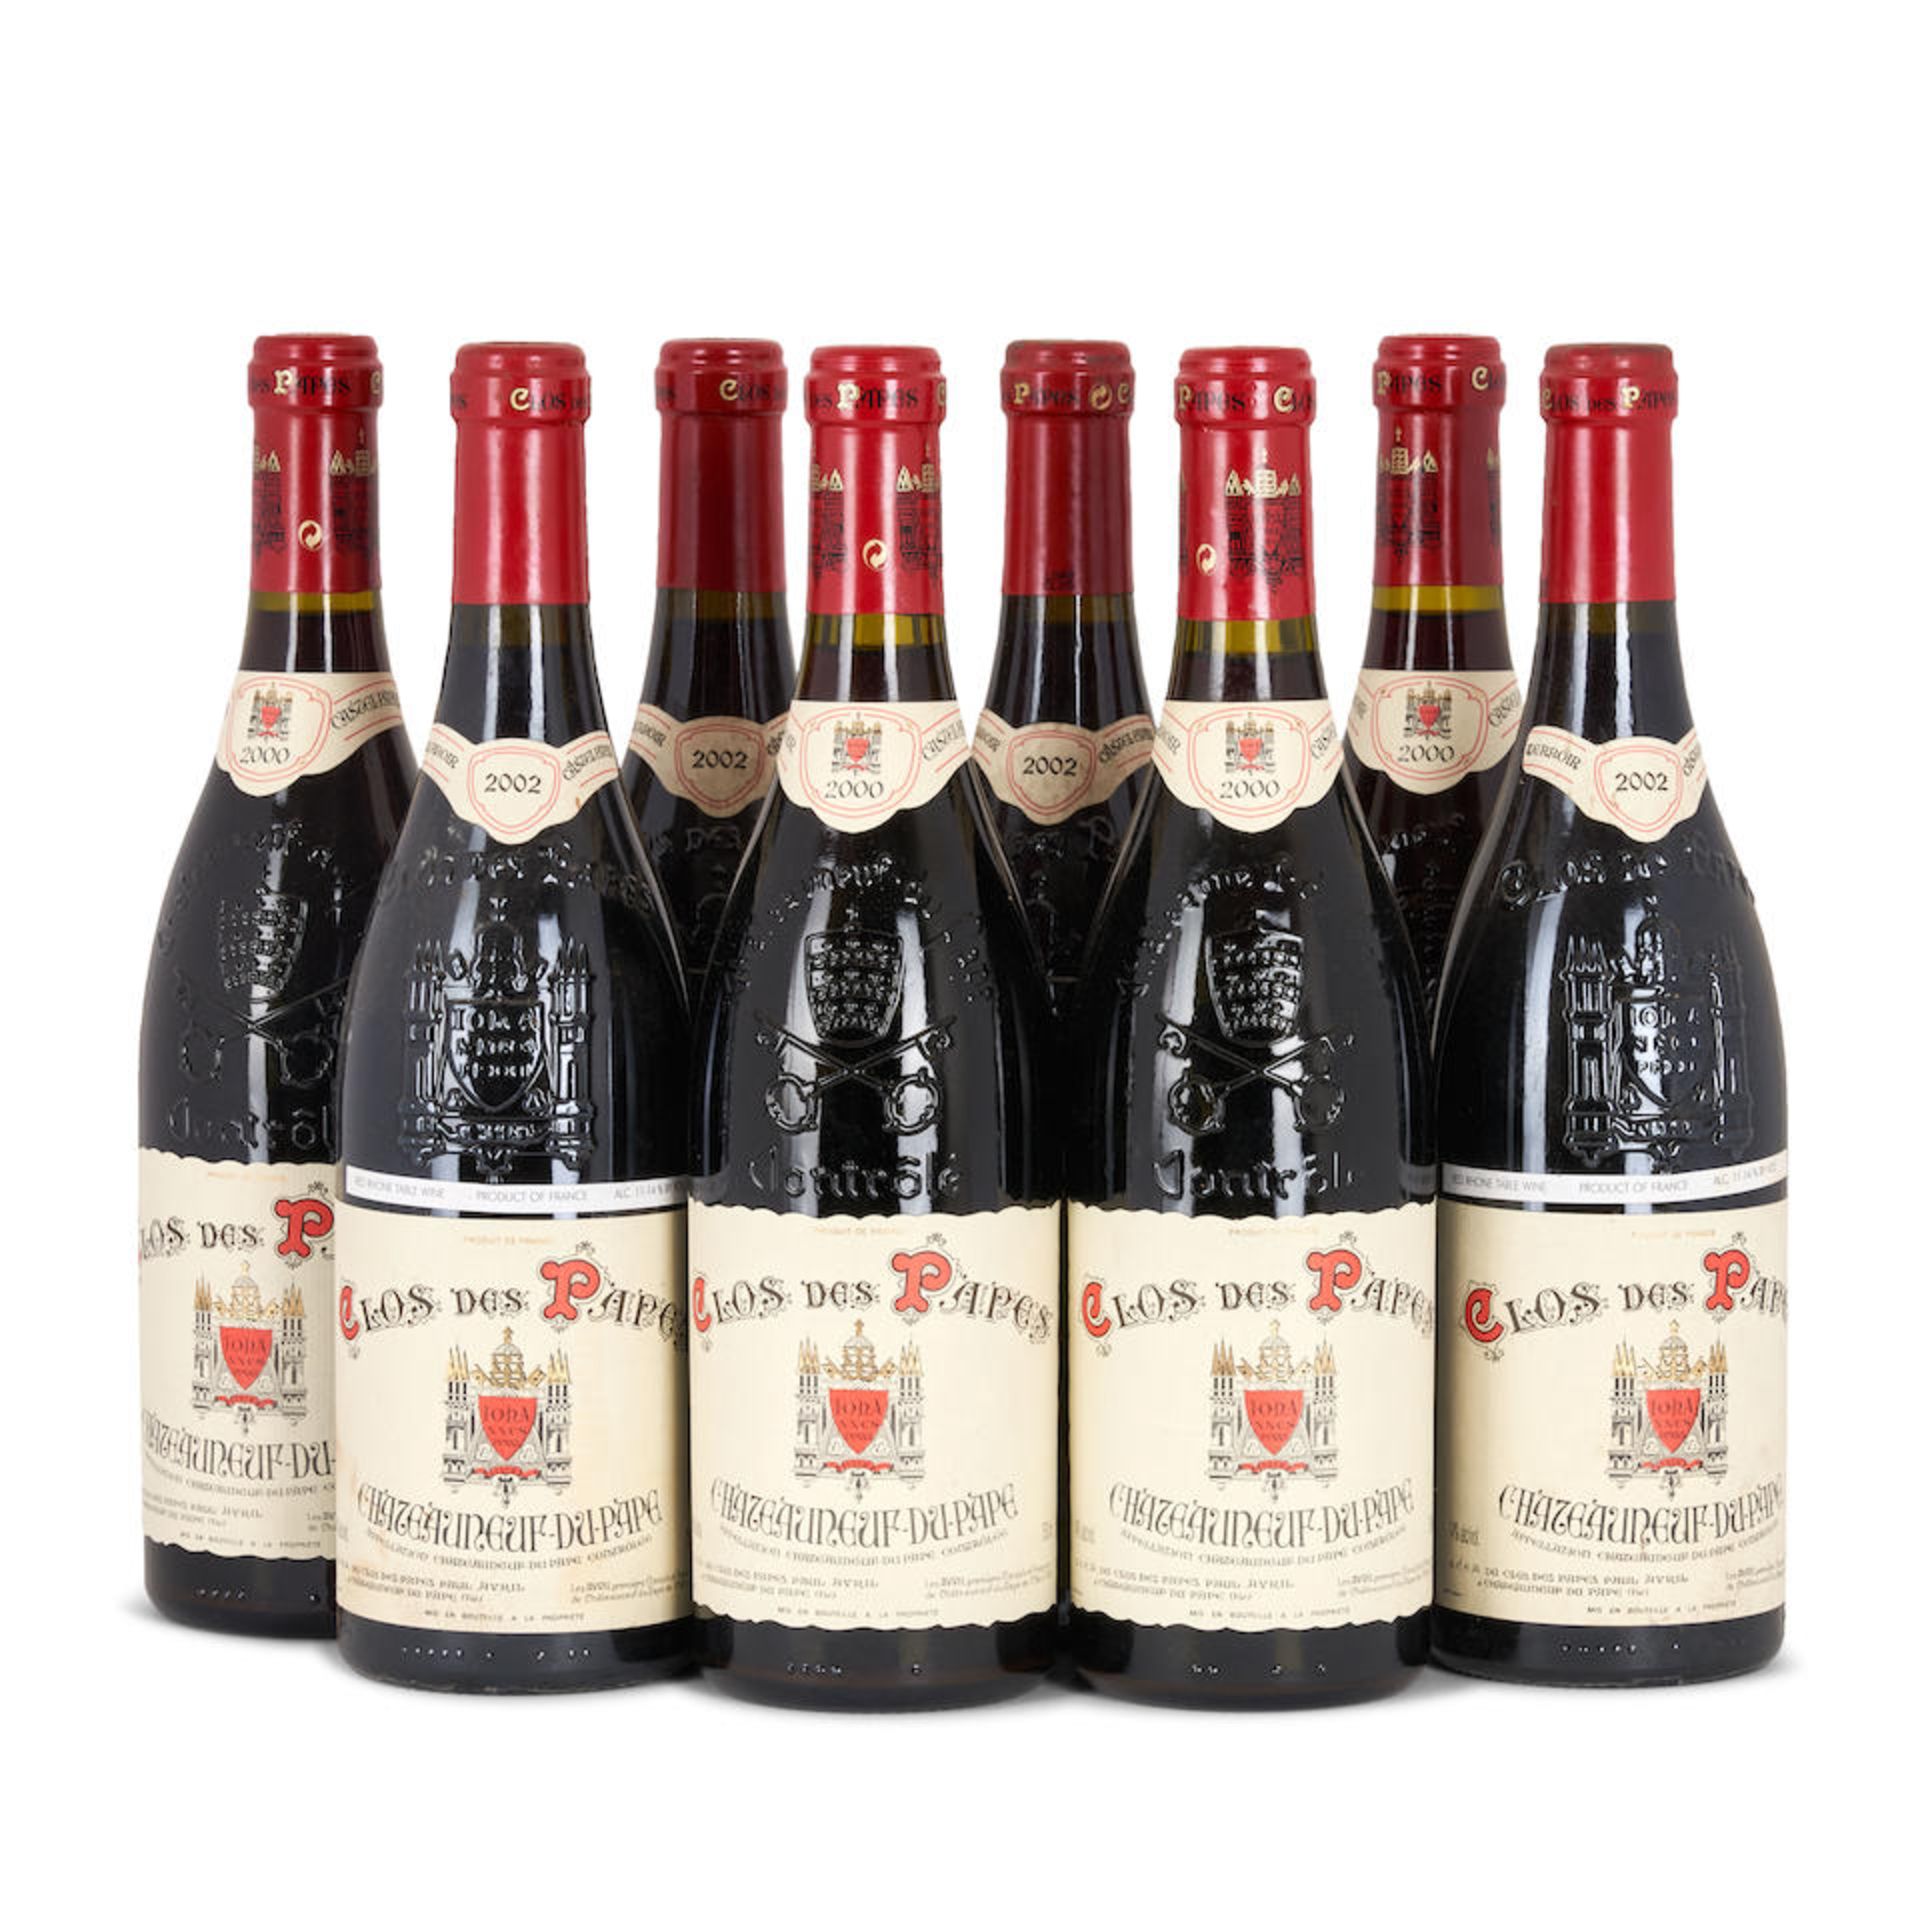 Mixed Vintage Clos des Papes Chateauneuf du Pape (8 bottles)